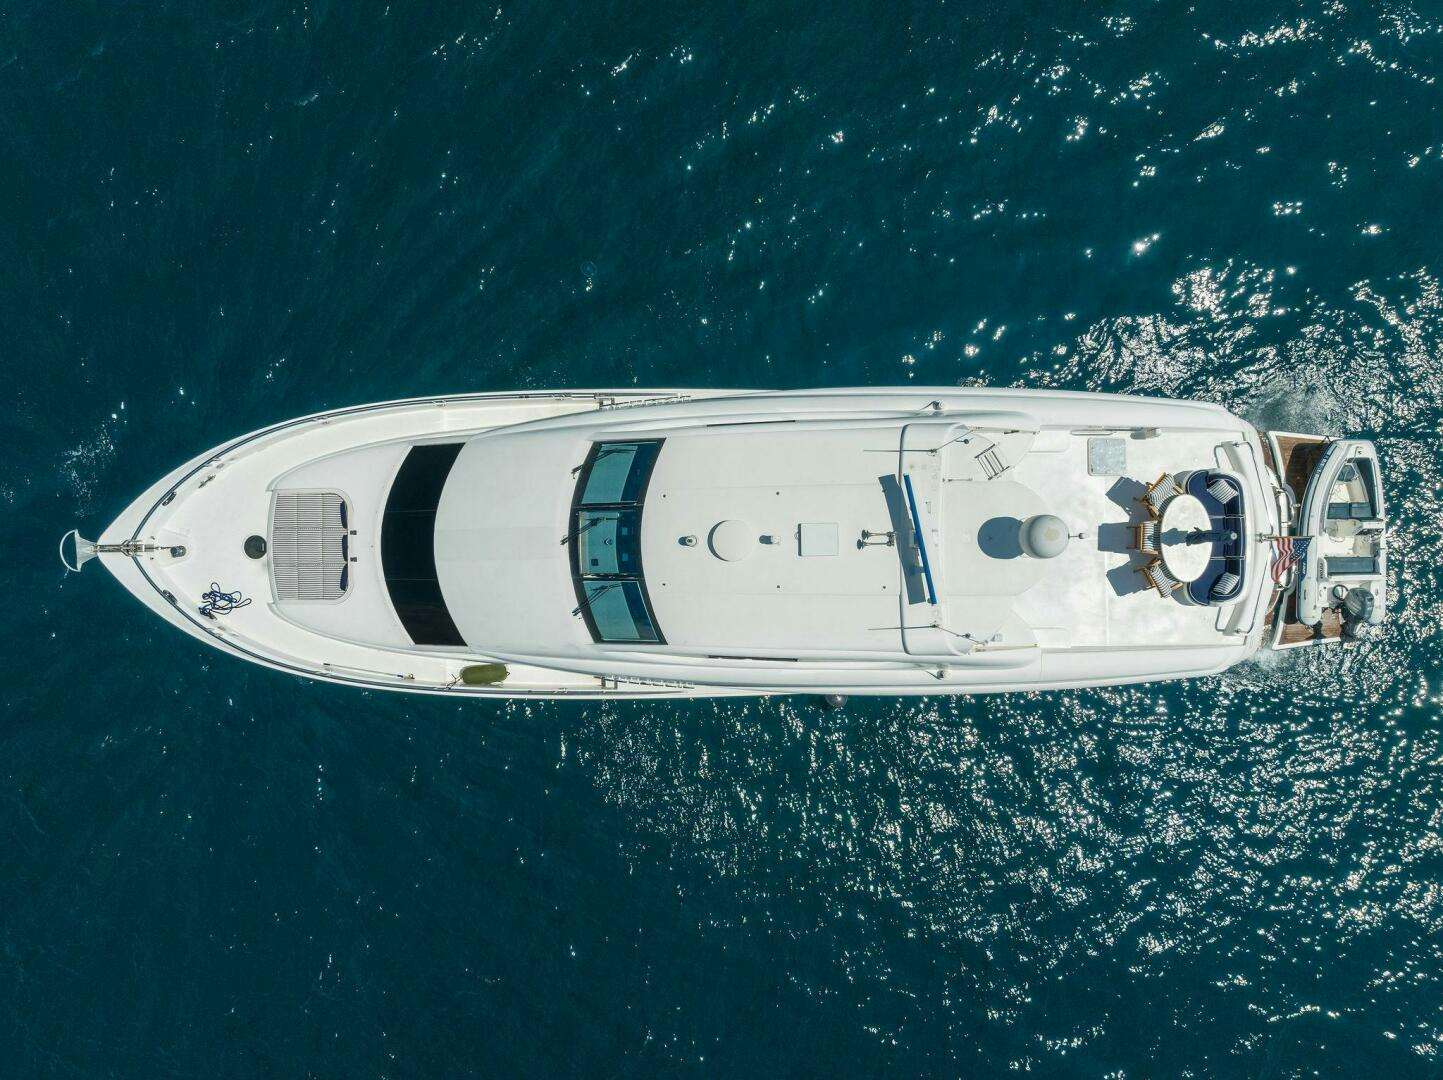 Coraggio
Yacht for Sale